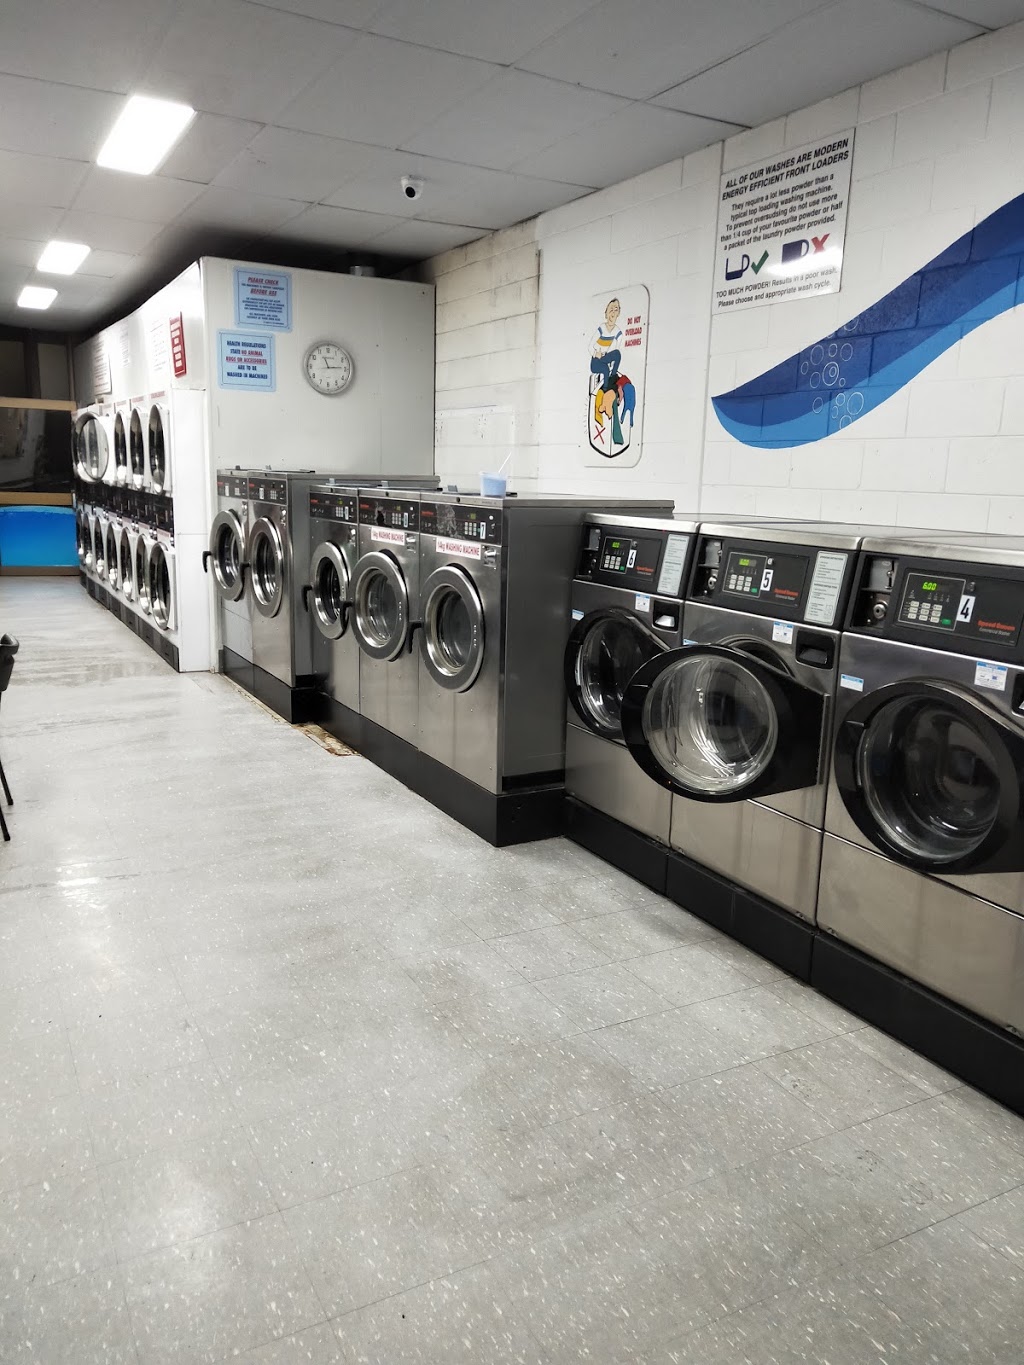 John St Pakenham Laundromat | laundry | 43 John St, Pakenham VIC 3810, Australia | 0417563433 OR +61 417 563 433